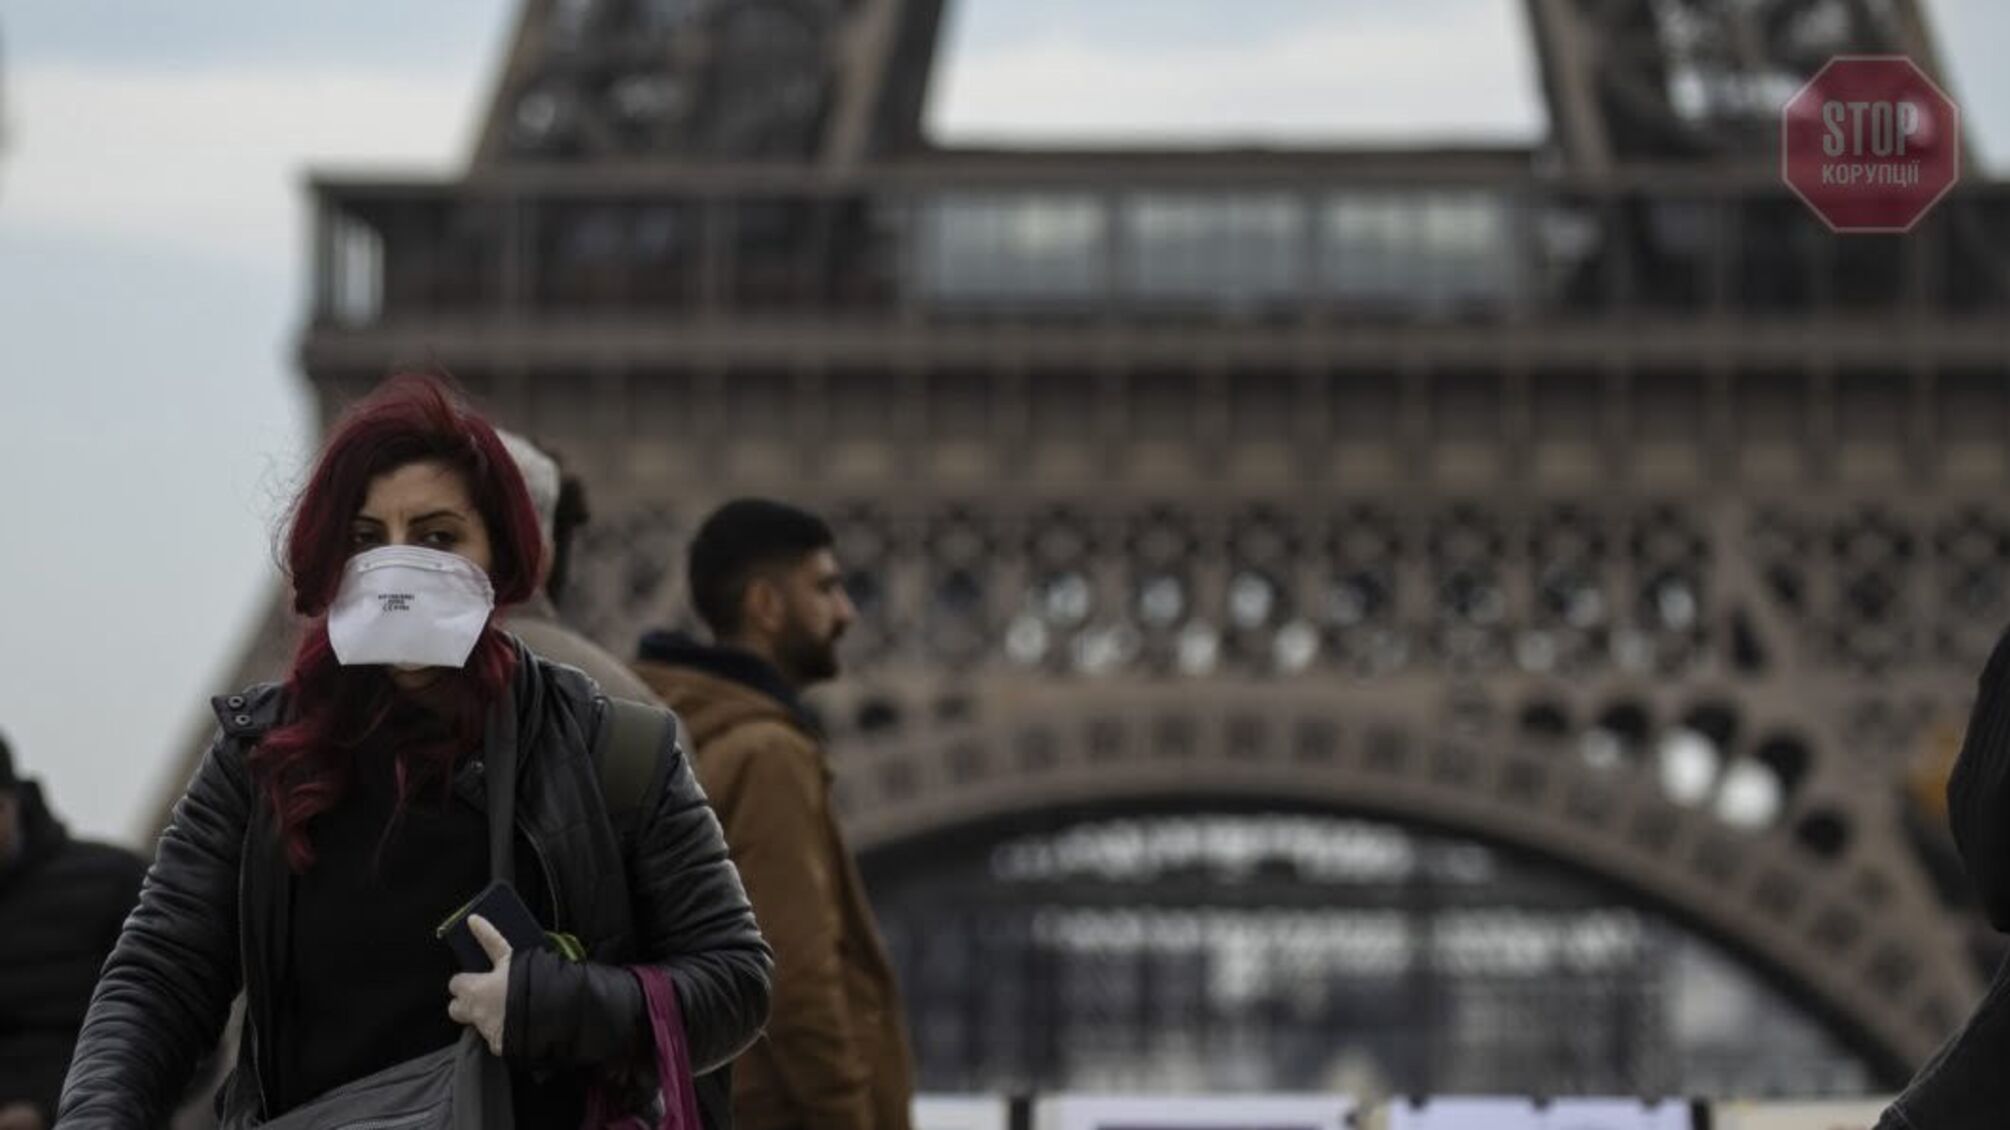 Франция предоставляет гражданство за помощь в борьбе с коронавирусом